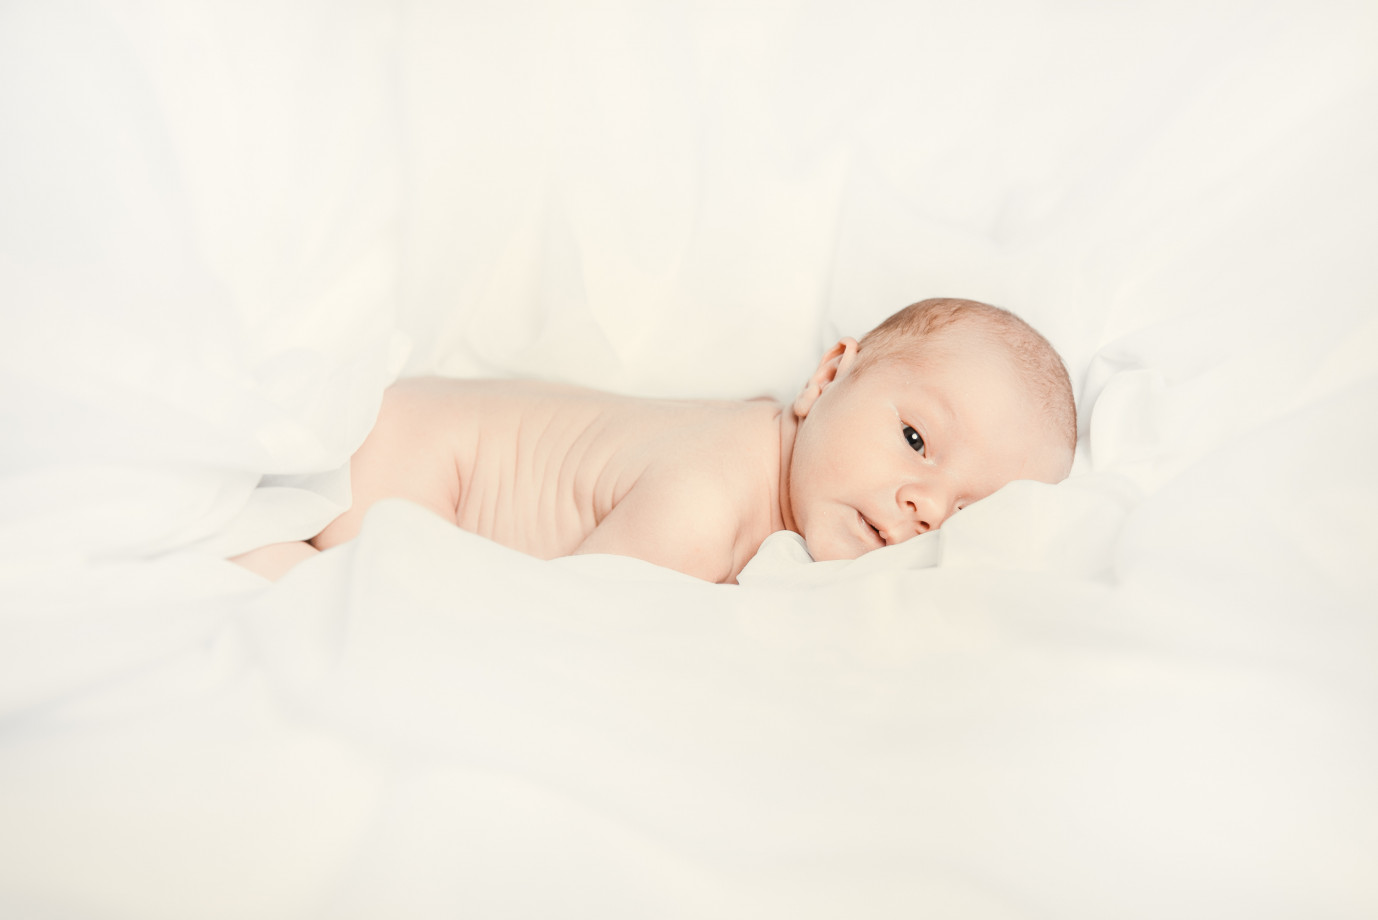 fotograf wroclaw ilkov-dmytro portfolio zdjecia noworodkow sesje noworodkowe niemowlę